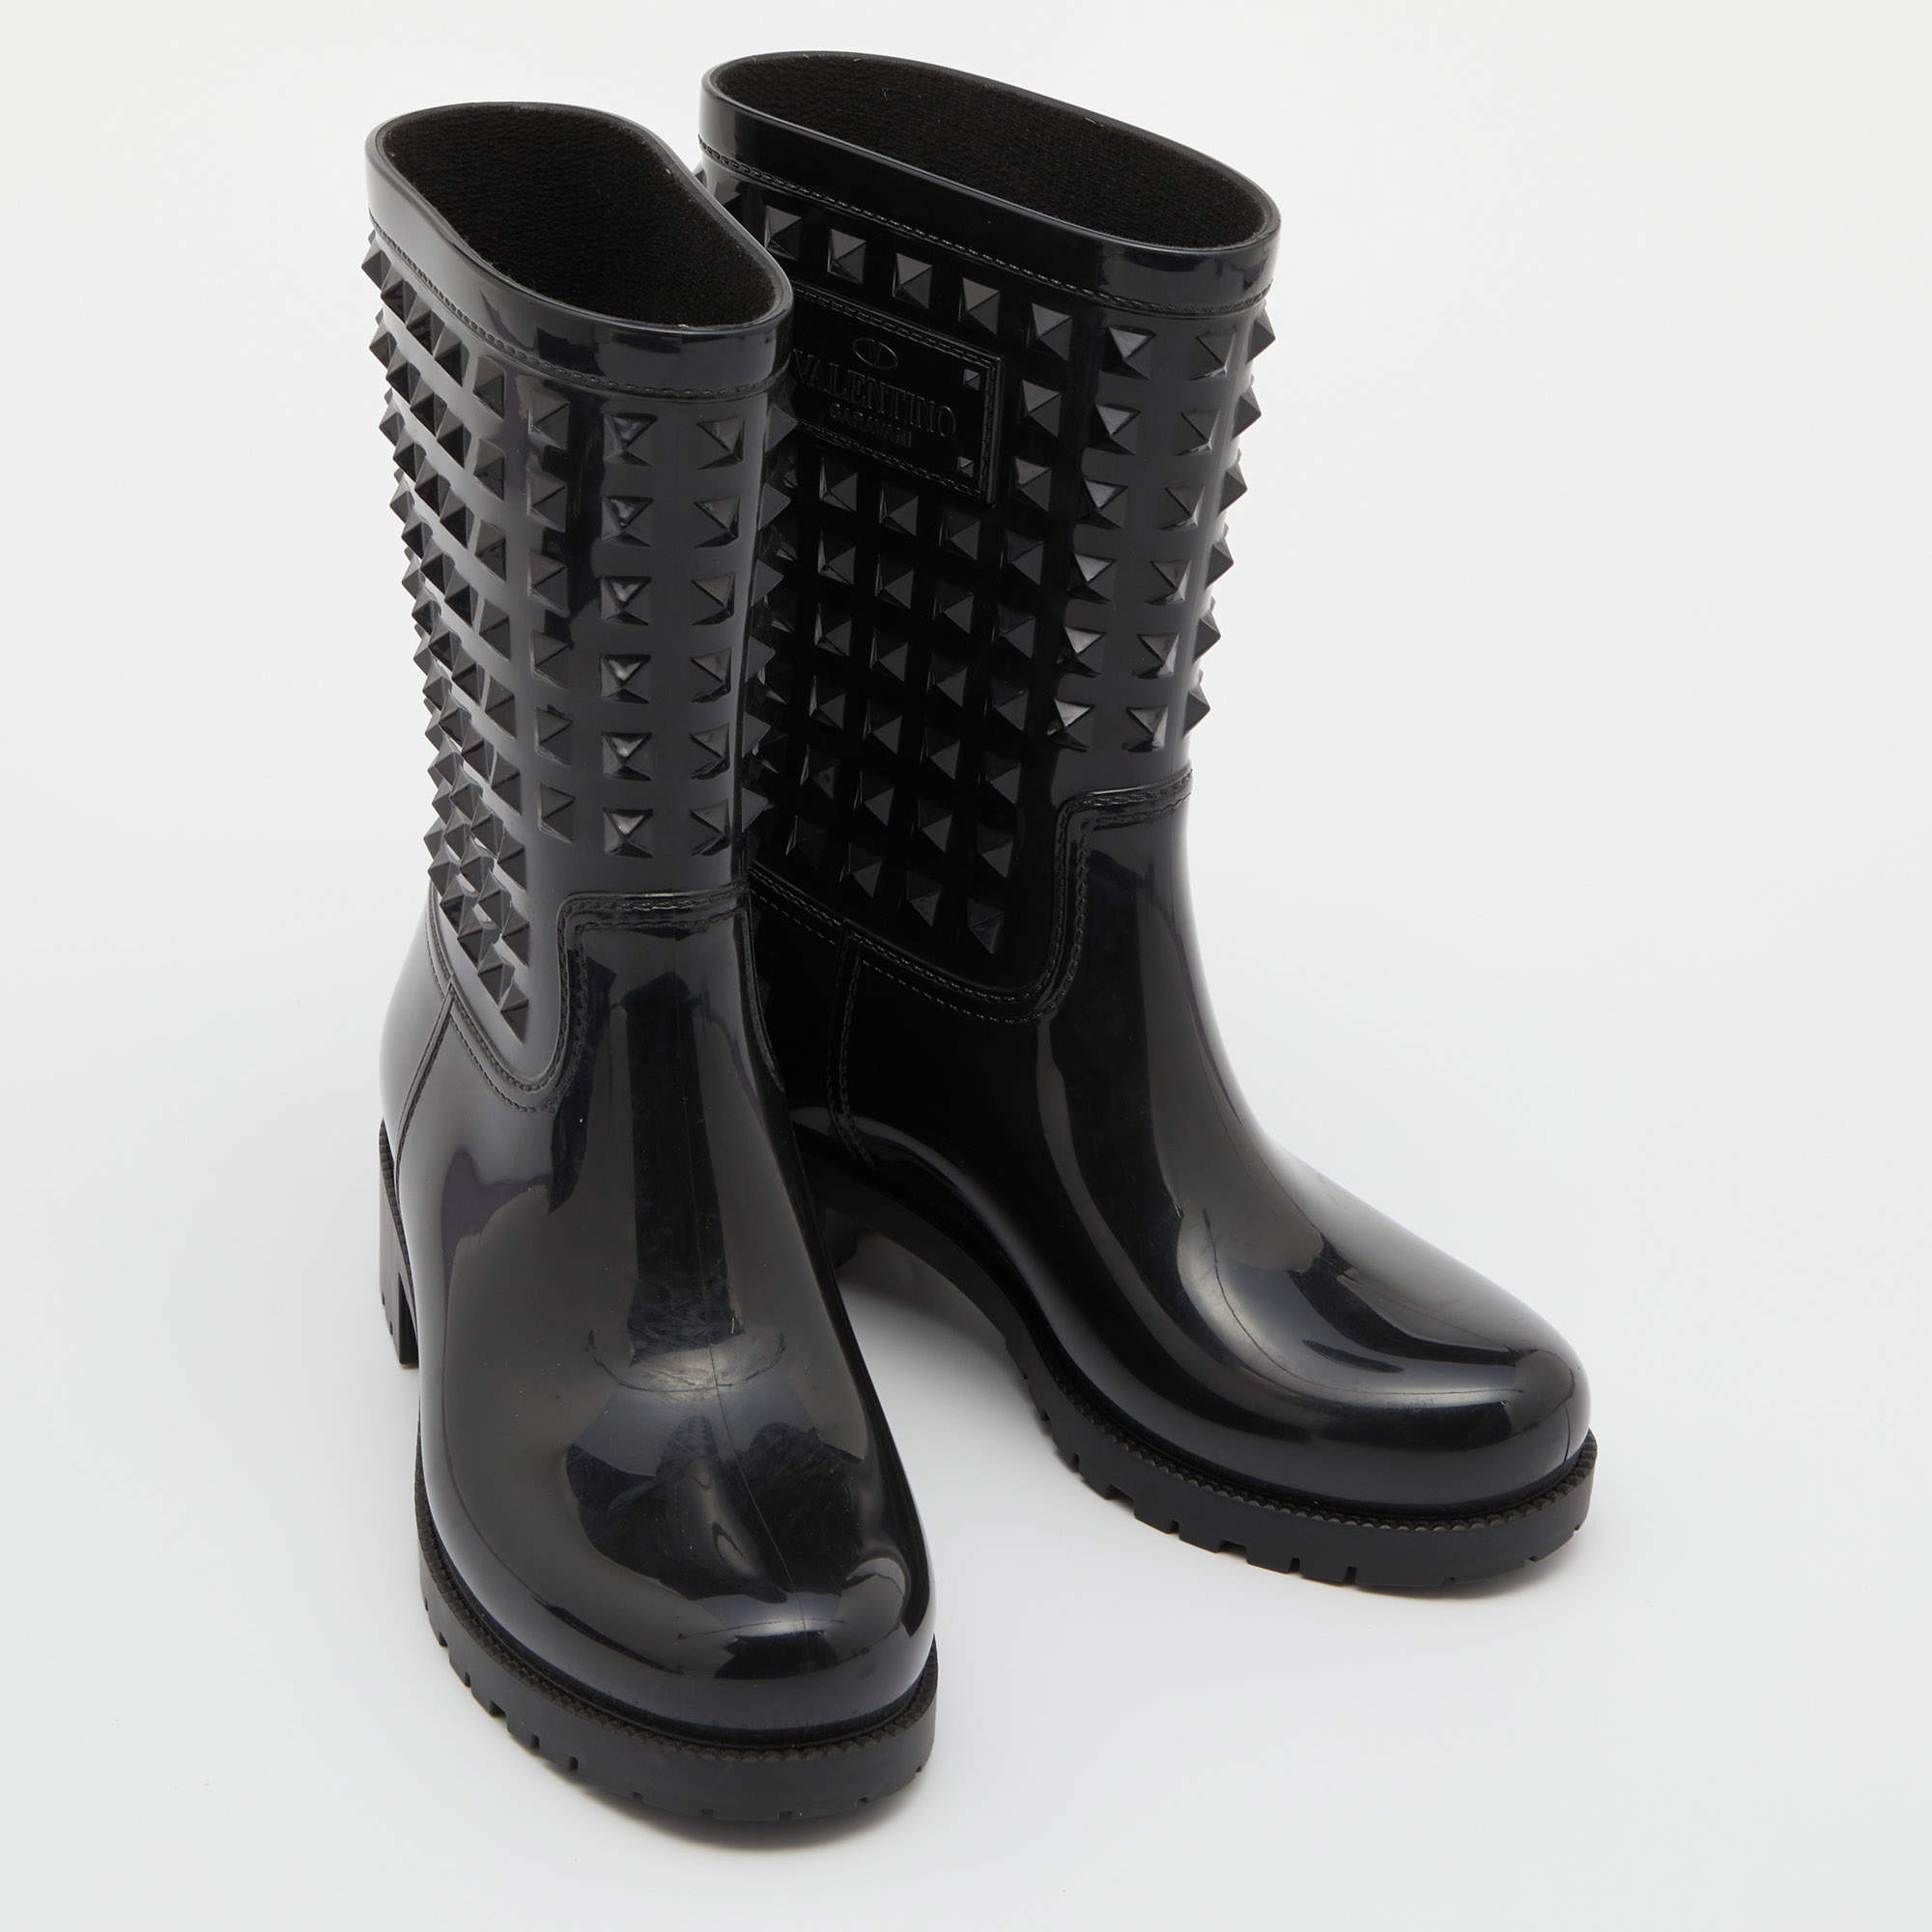 Drops wellington boots Louis Vuitton Black size 37 EU in Rubber